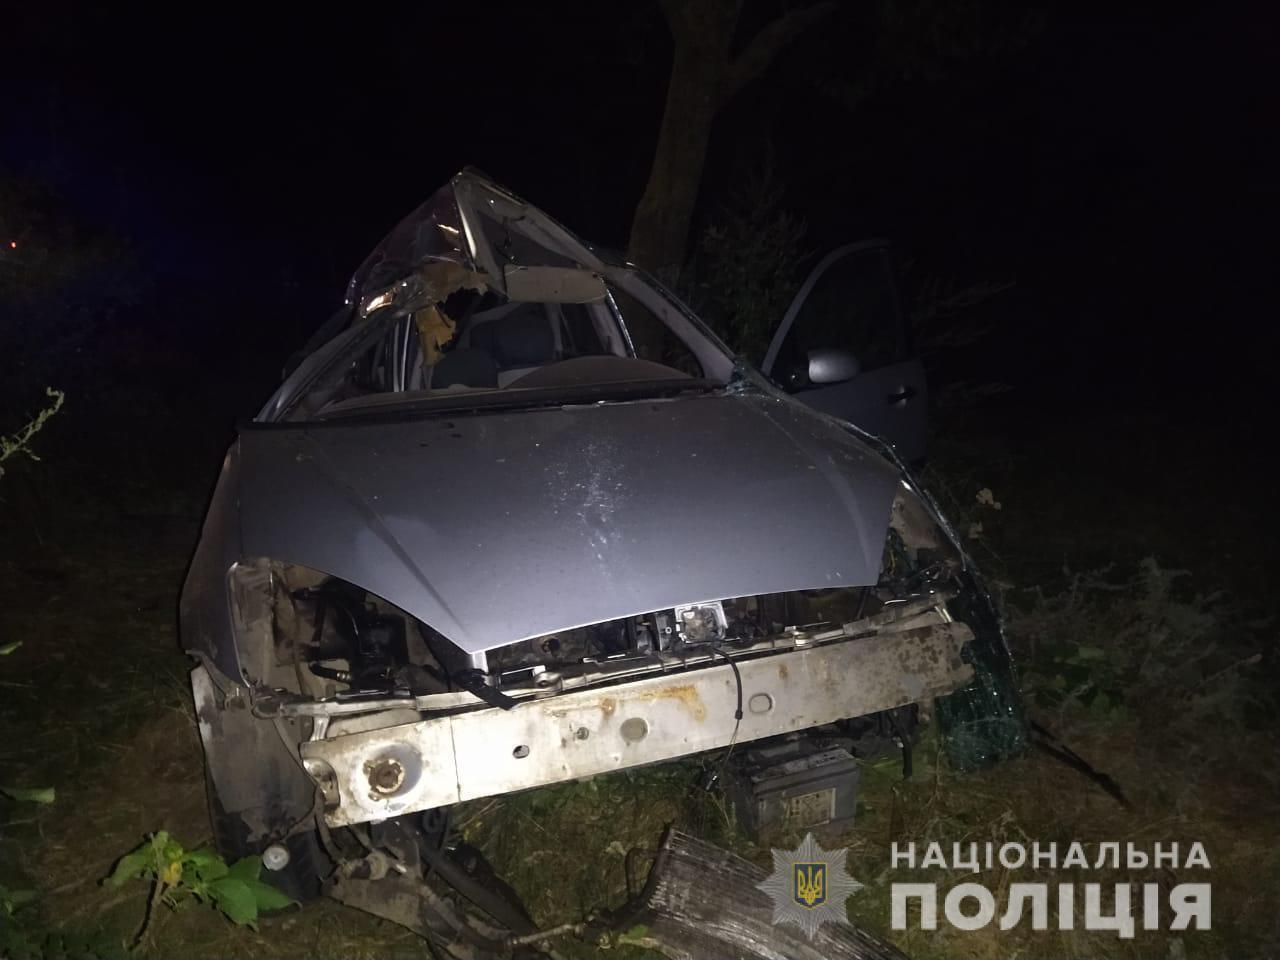 Поліцейські розслідують обставини смертельної ДТП на автодорозі Одеса - Новоазовськ